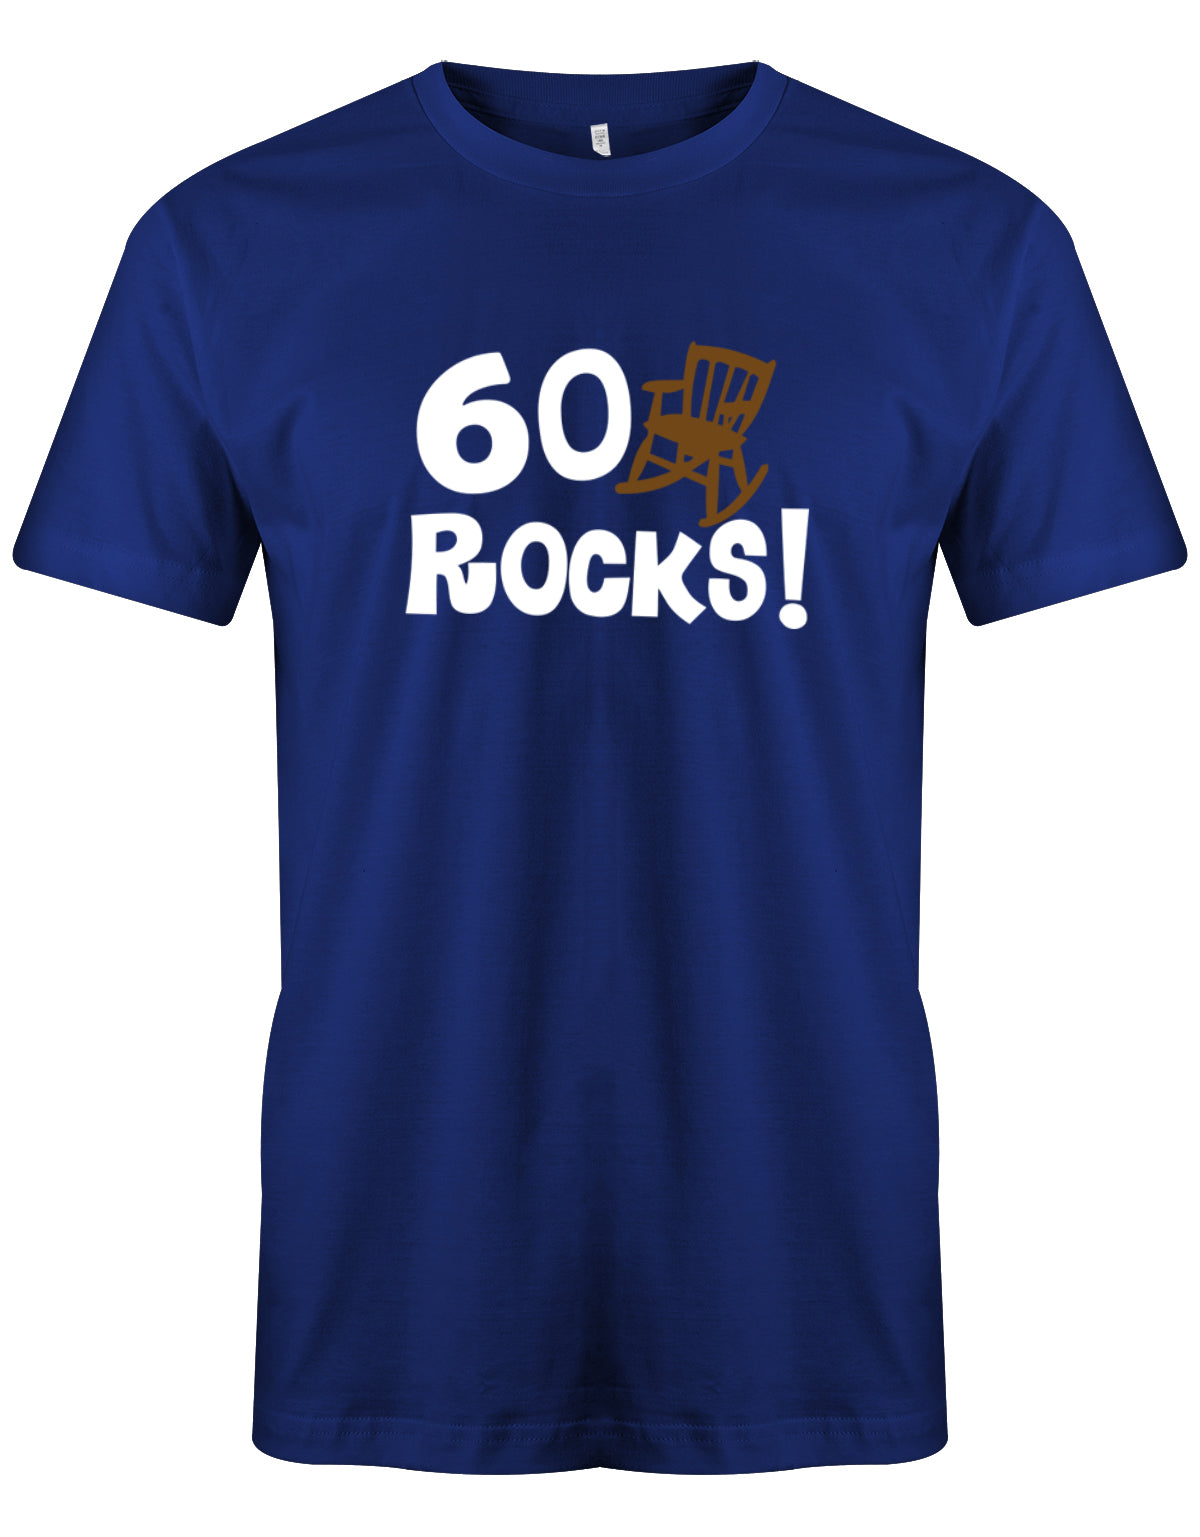 Lustiges T-Shirt zum 60. Geburtstag für den Mann Bedruckt mit 60 Rocks! Schaukelstuhl Royalblau